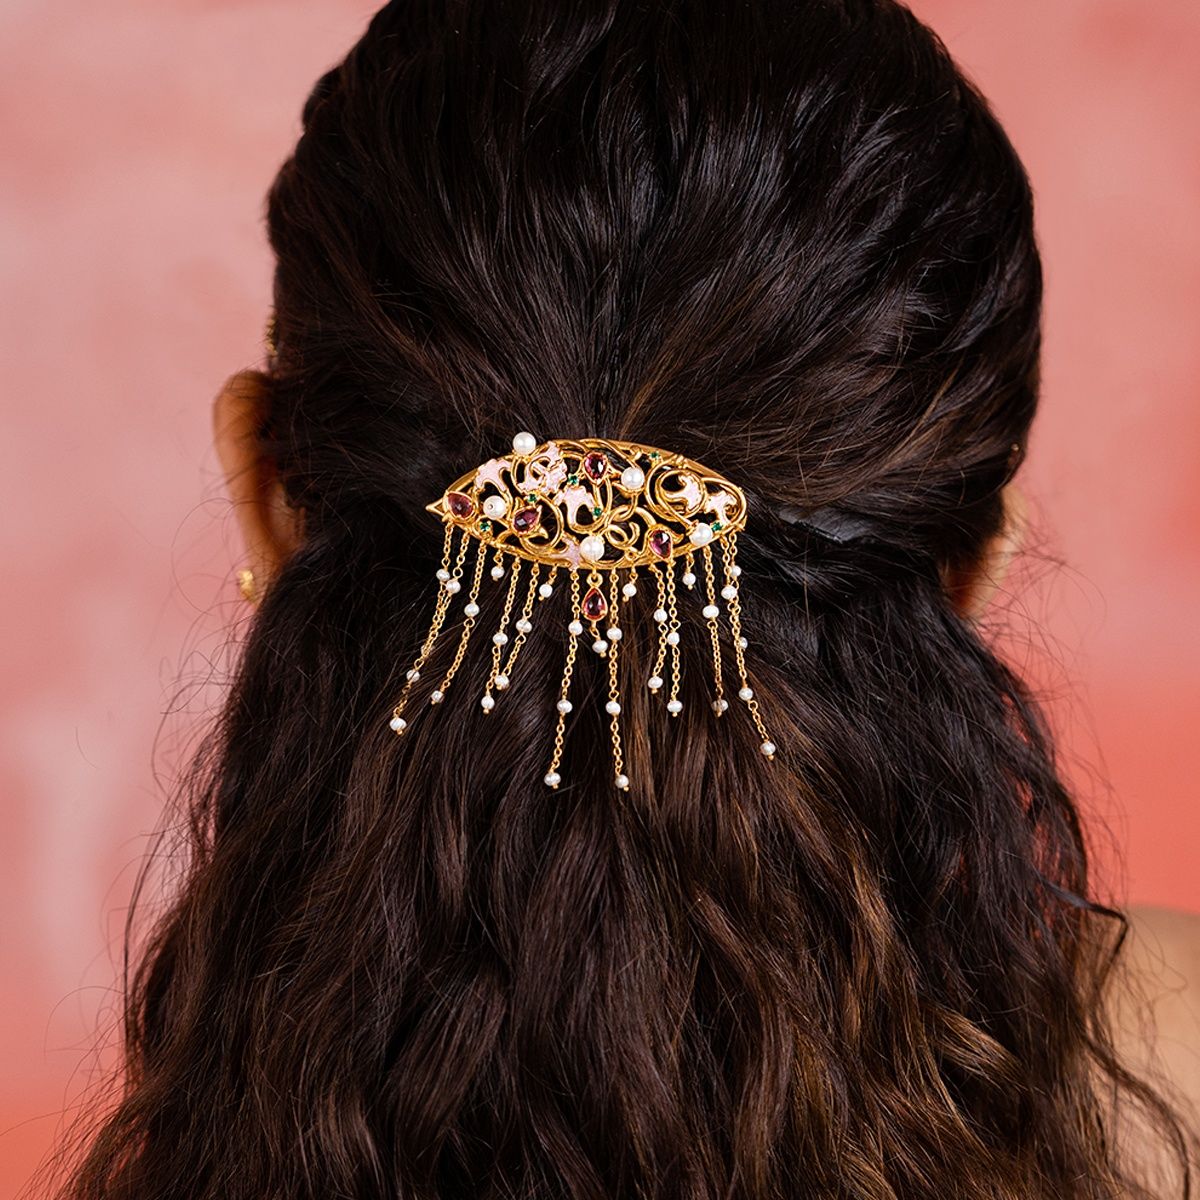 Punjabi gold hair pins